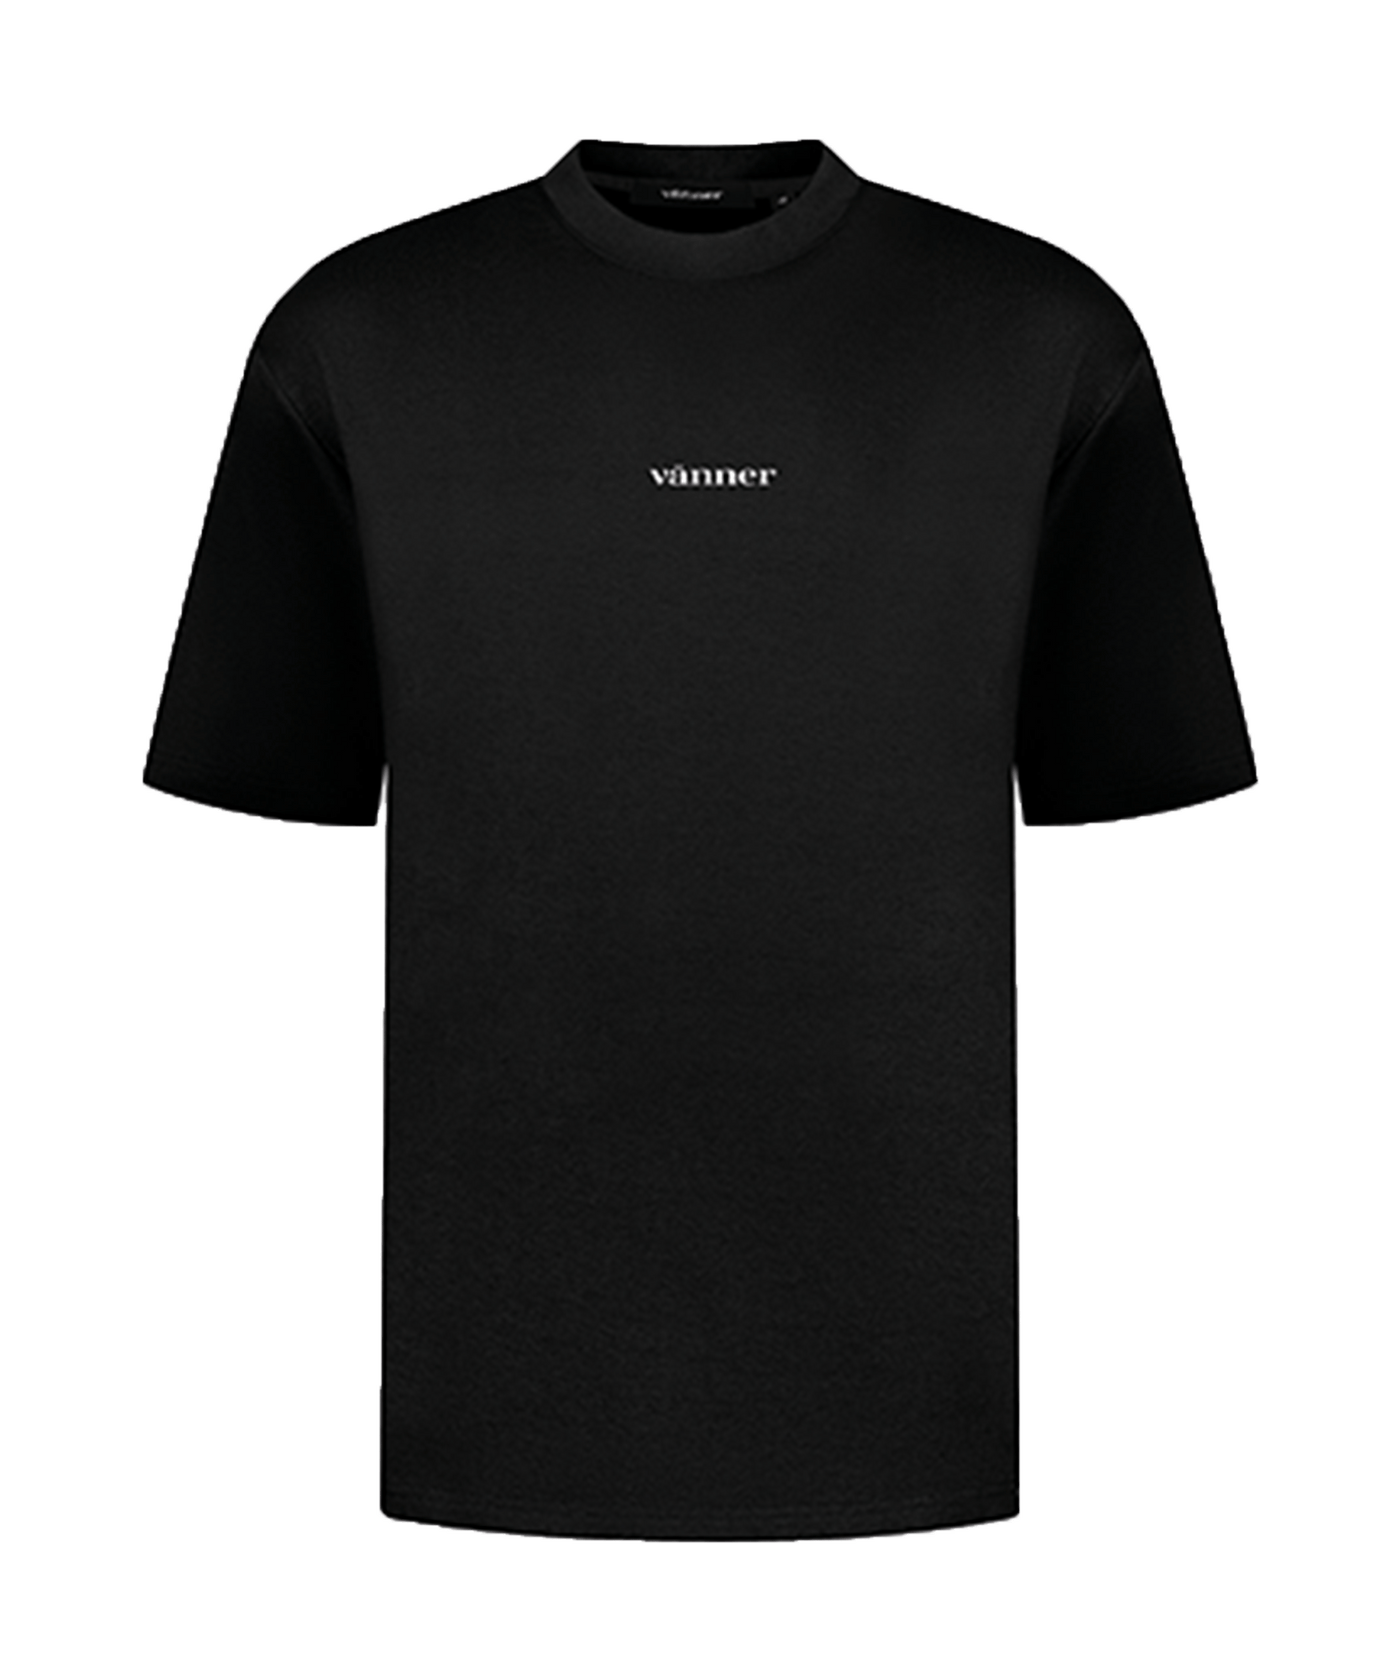 VANNER - Tropical - T-shirt - Black/white